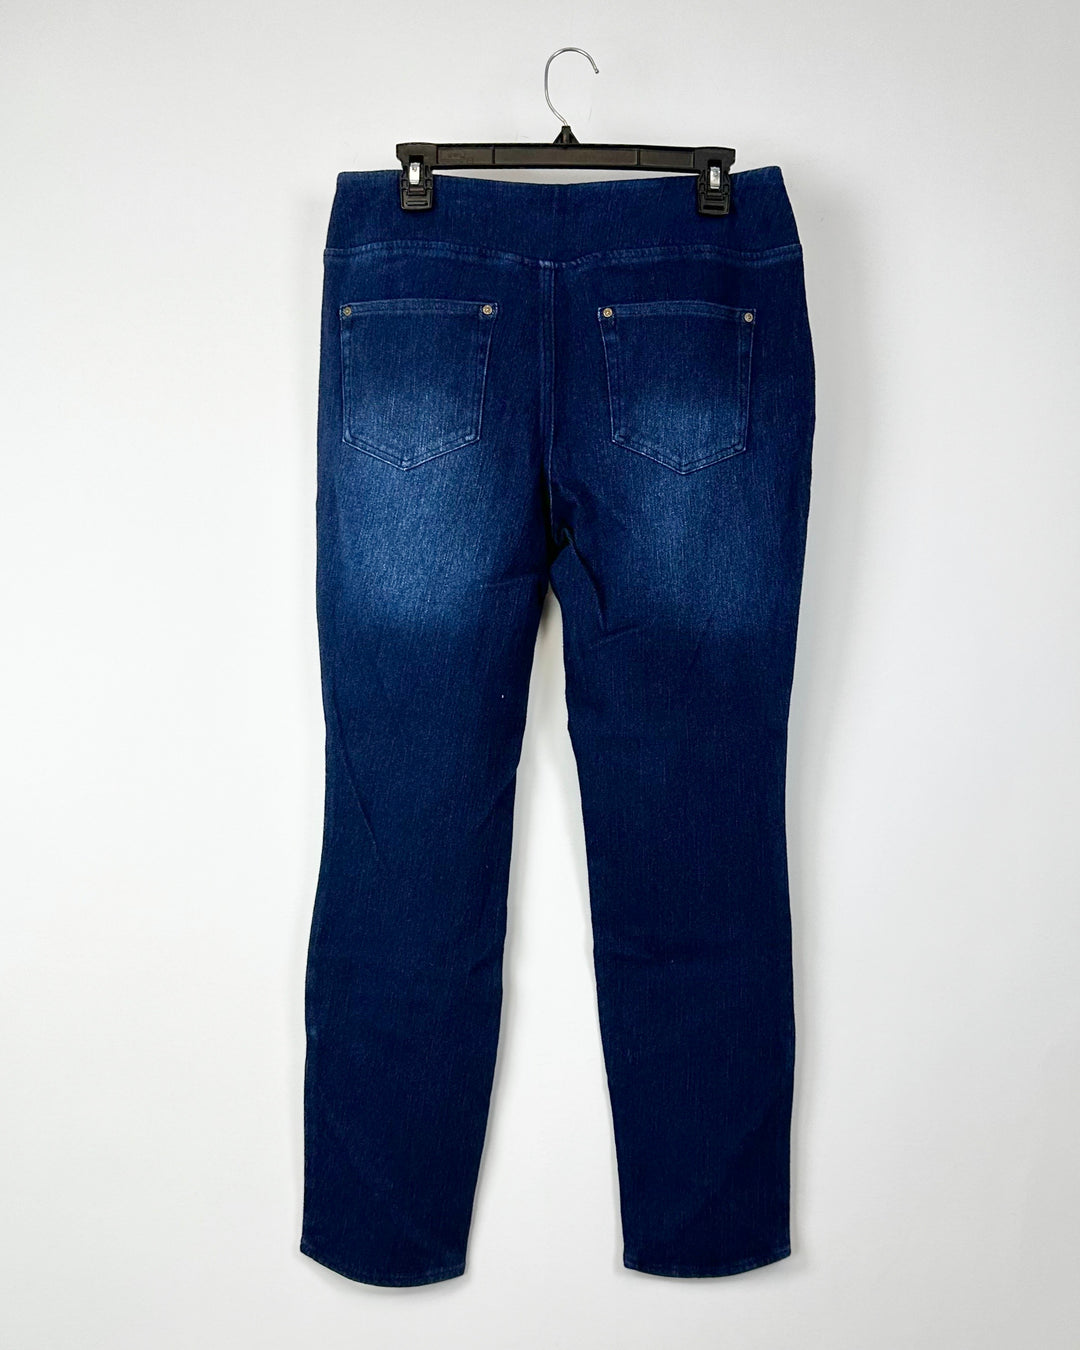 Dark Wash Denim Jeans - 12